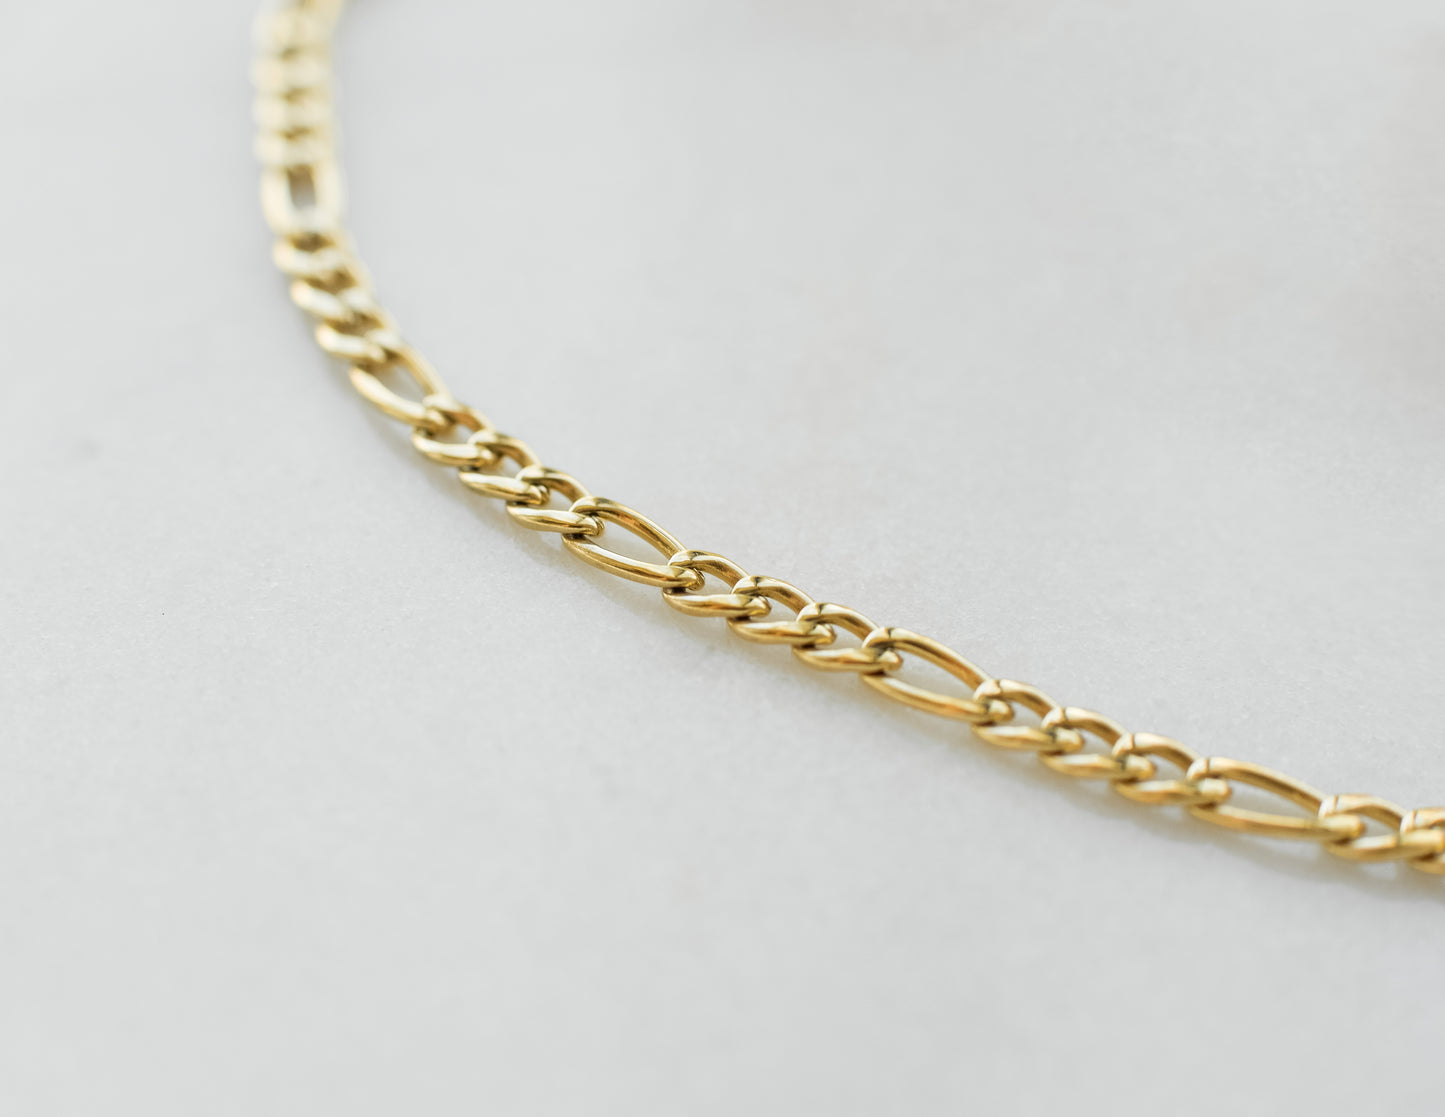 18K Gold Figaro Chain Bracelet